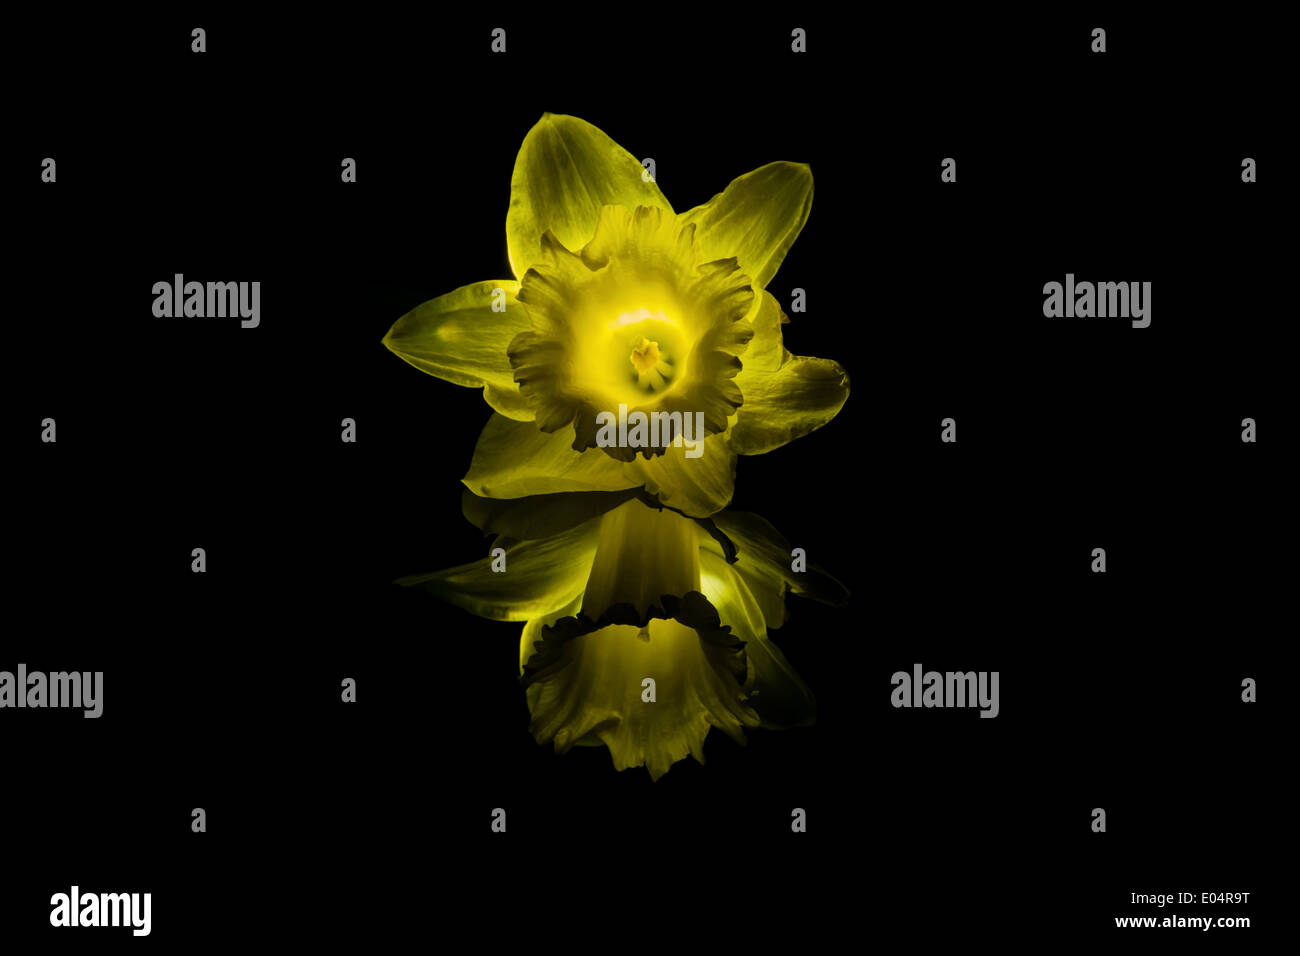 Narcissus Blossom colocados sobre un brillante reflejo subterráneo, con efecto de luz Foto de stock